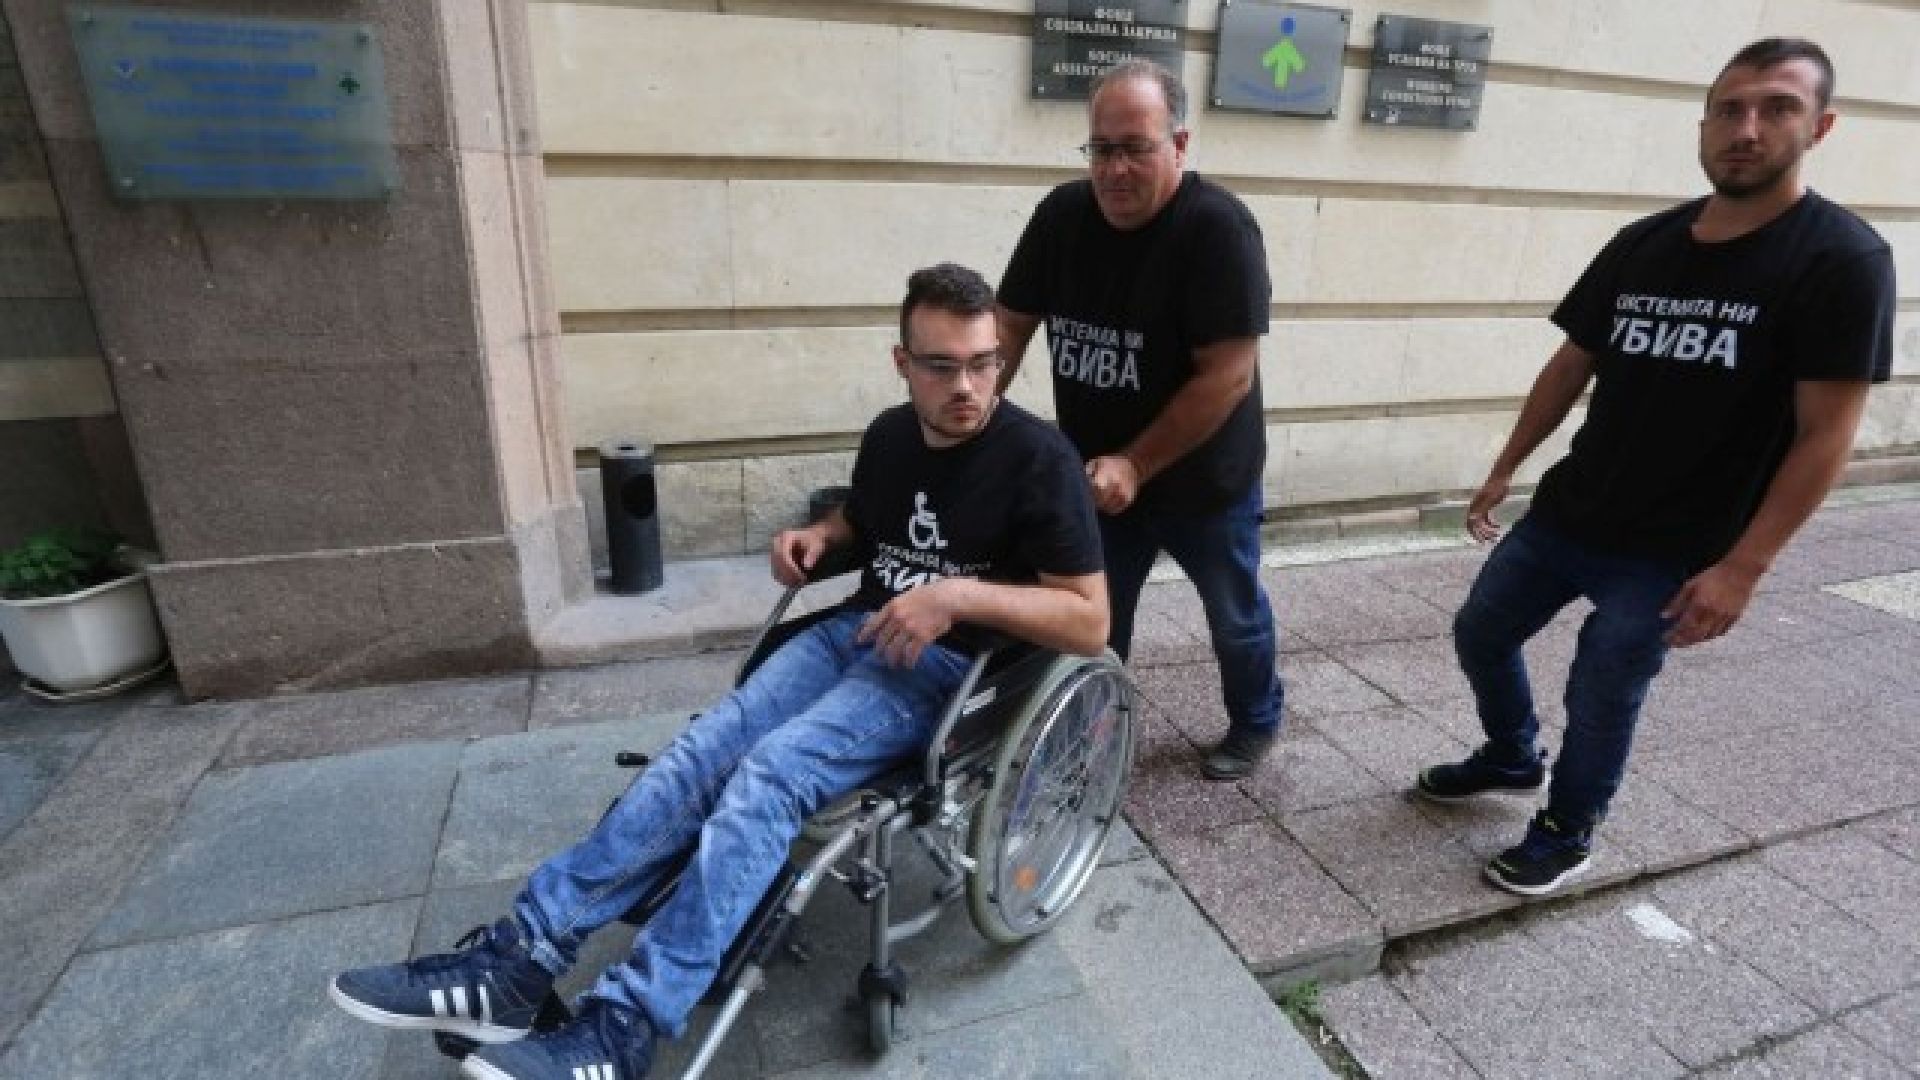 86 000 българи с увреждания ще получат личен асистент от